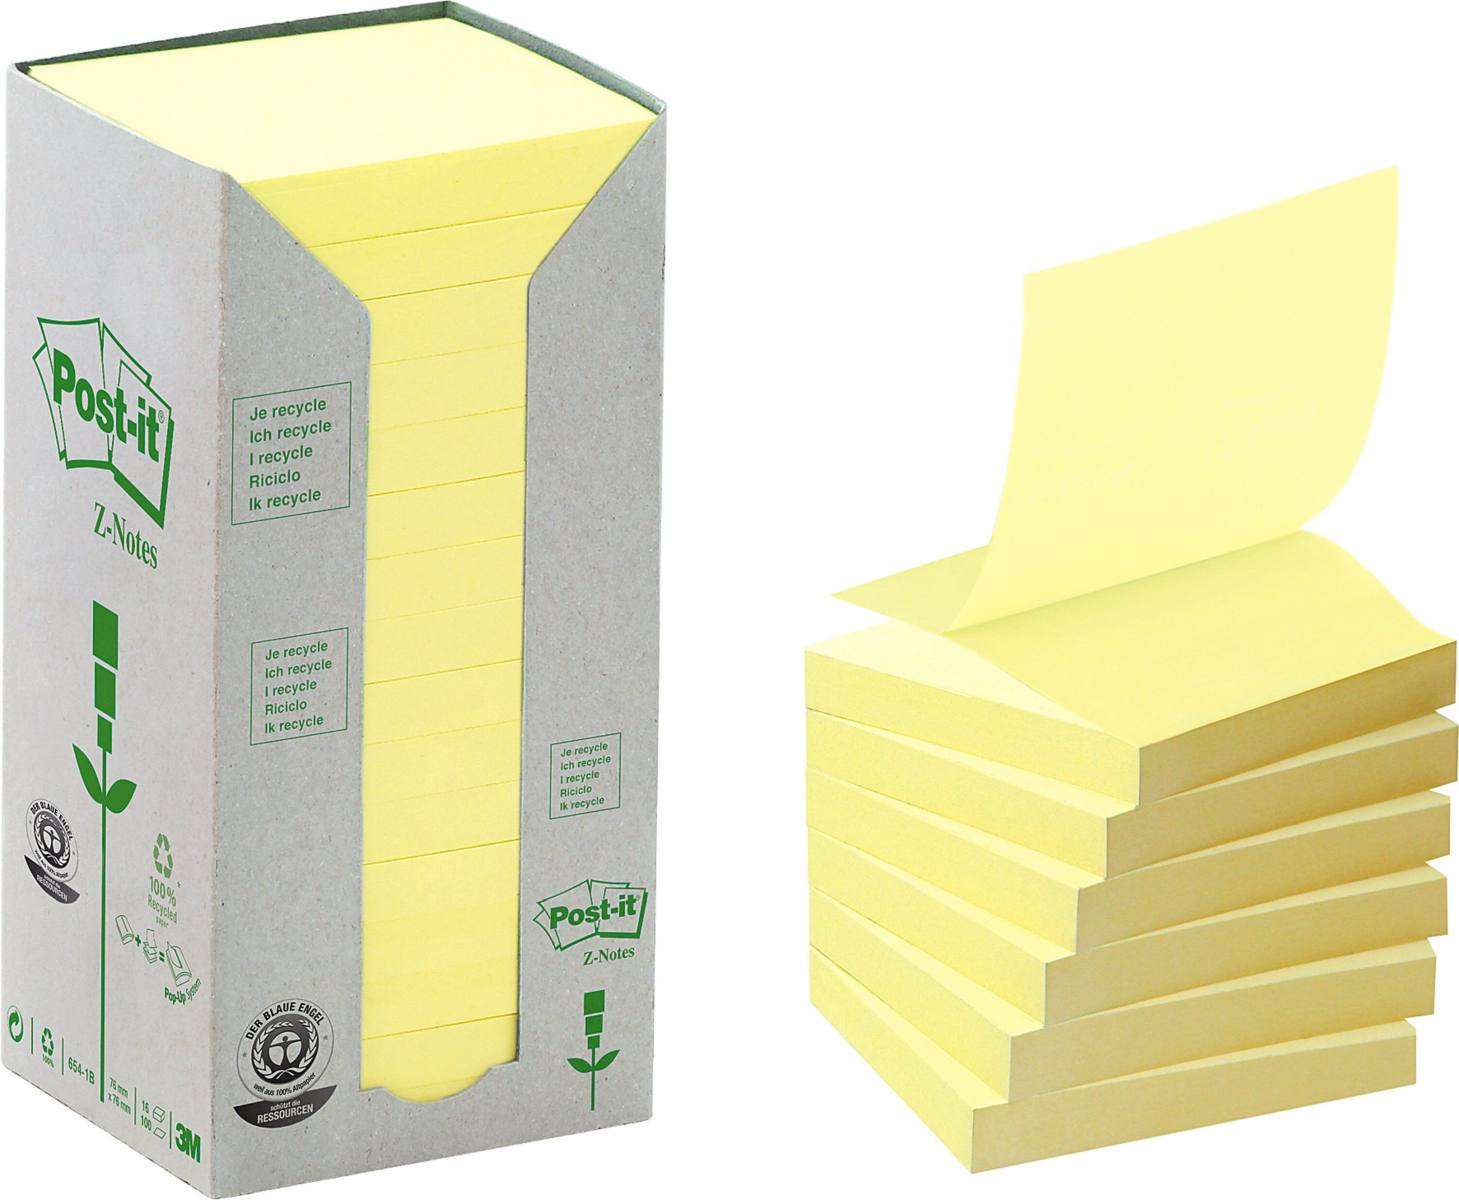 3M Post-it Reciclaje Z-Notes Tower R330-1T, 76 mm x 76 mm, amarillo, 16 blocs de 100 hojas cada uno